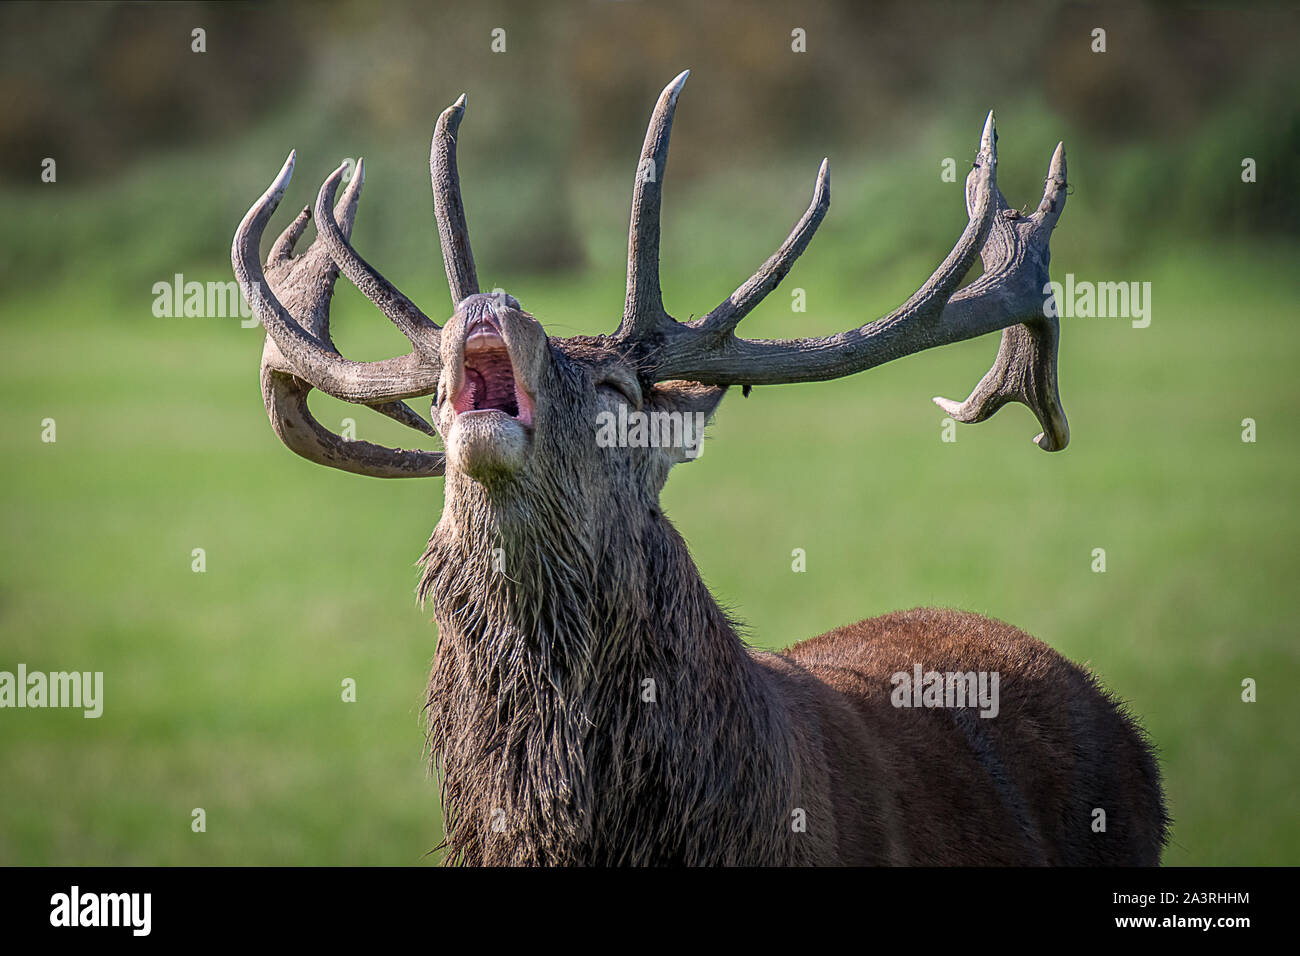 Eine sehr enge Foto des Kopfes und Geweih eines königlichen Rotwild Hirsch. Sein Mund ist geöffnet und wieder zurück, wie es die Faltenbälge aus Rivalen zu warnen. Stockfoto